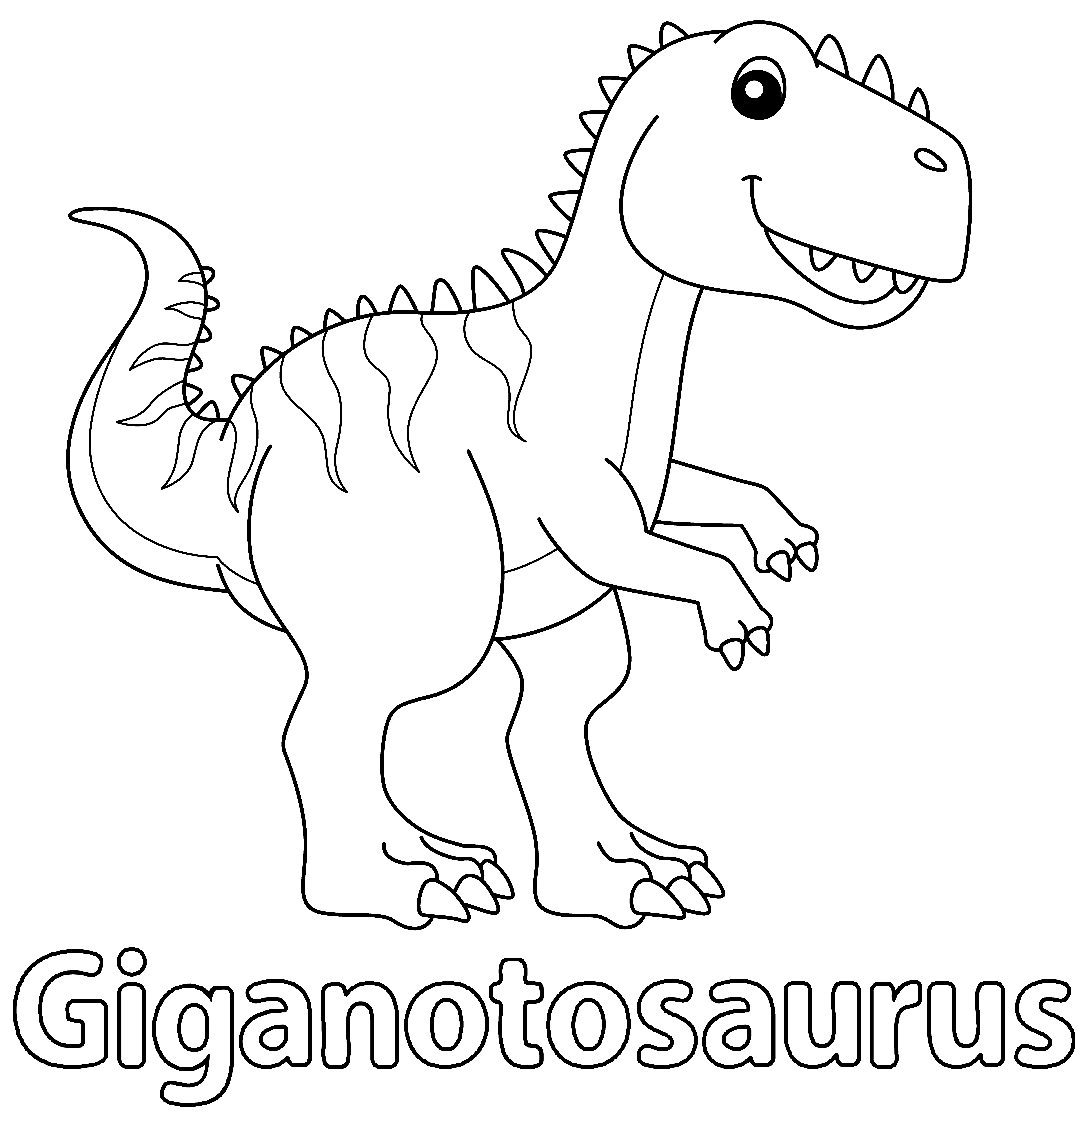 Afdrukbare Giganotosaurus-bladen van Giganotosaurus